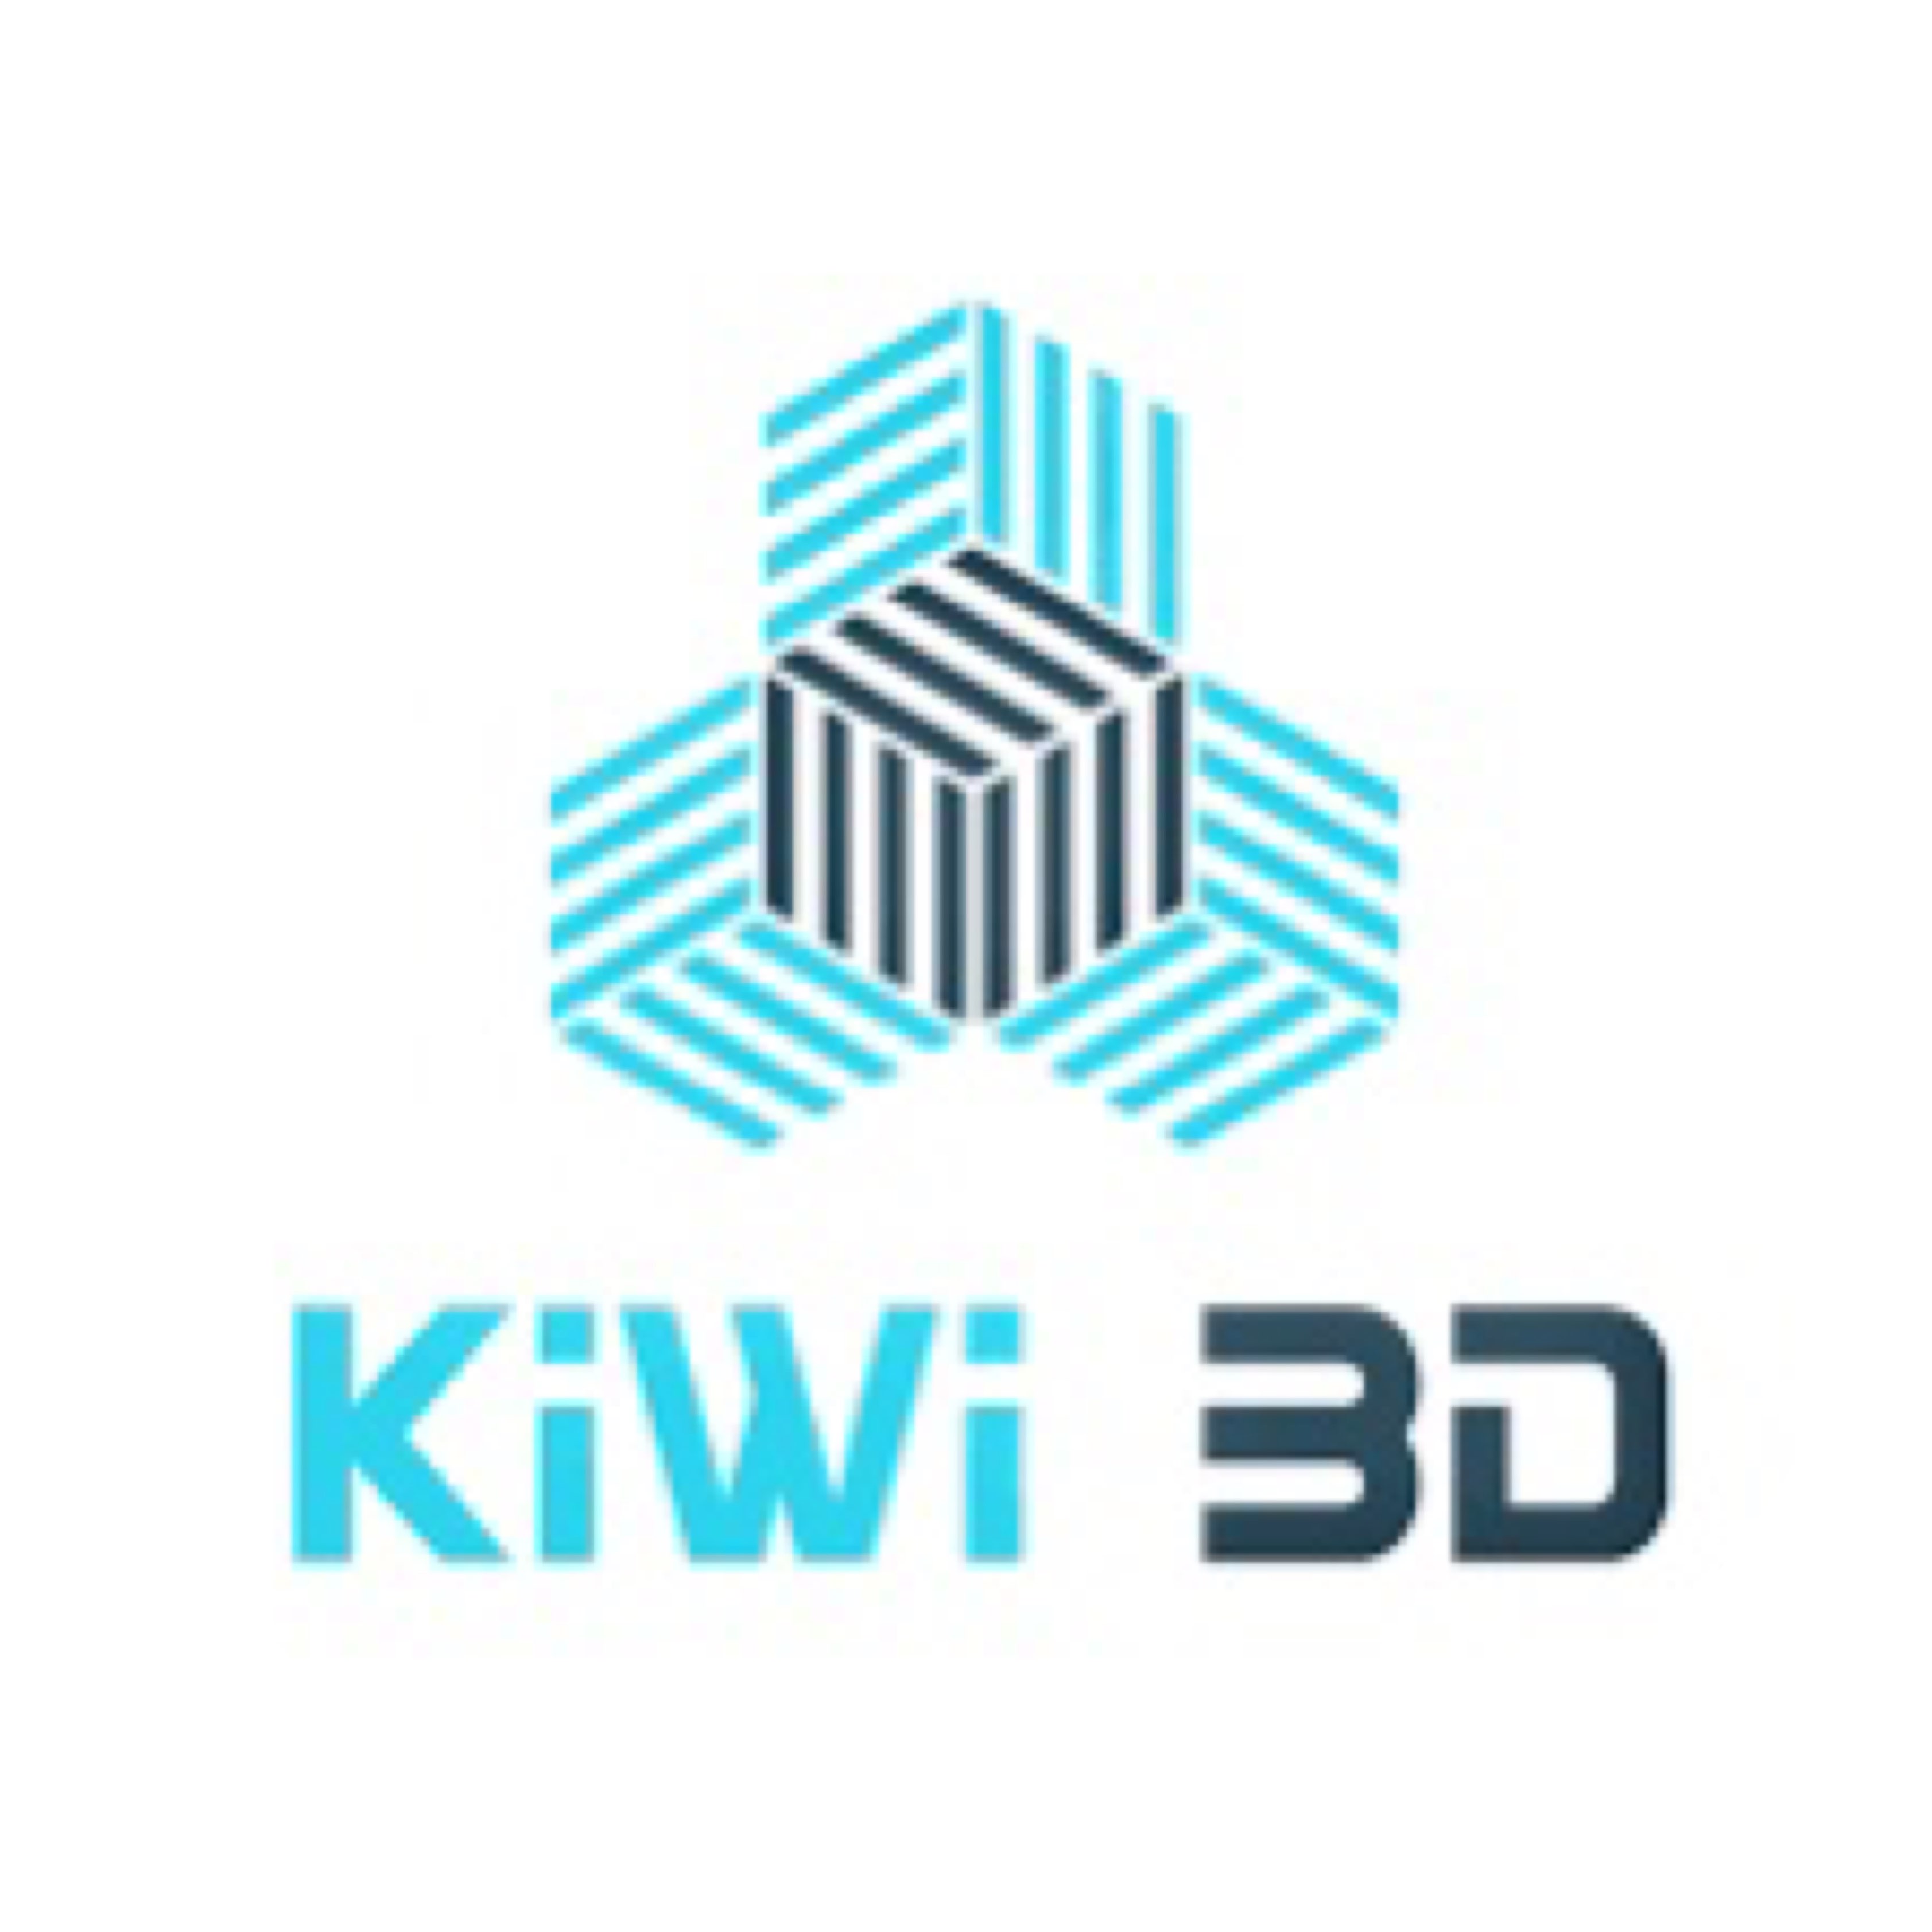 Kiwi3D